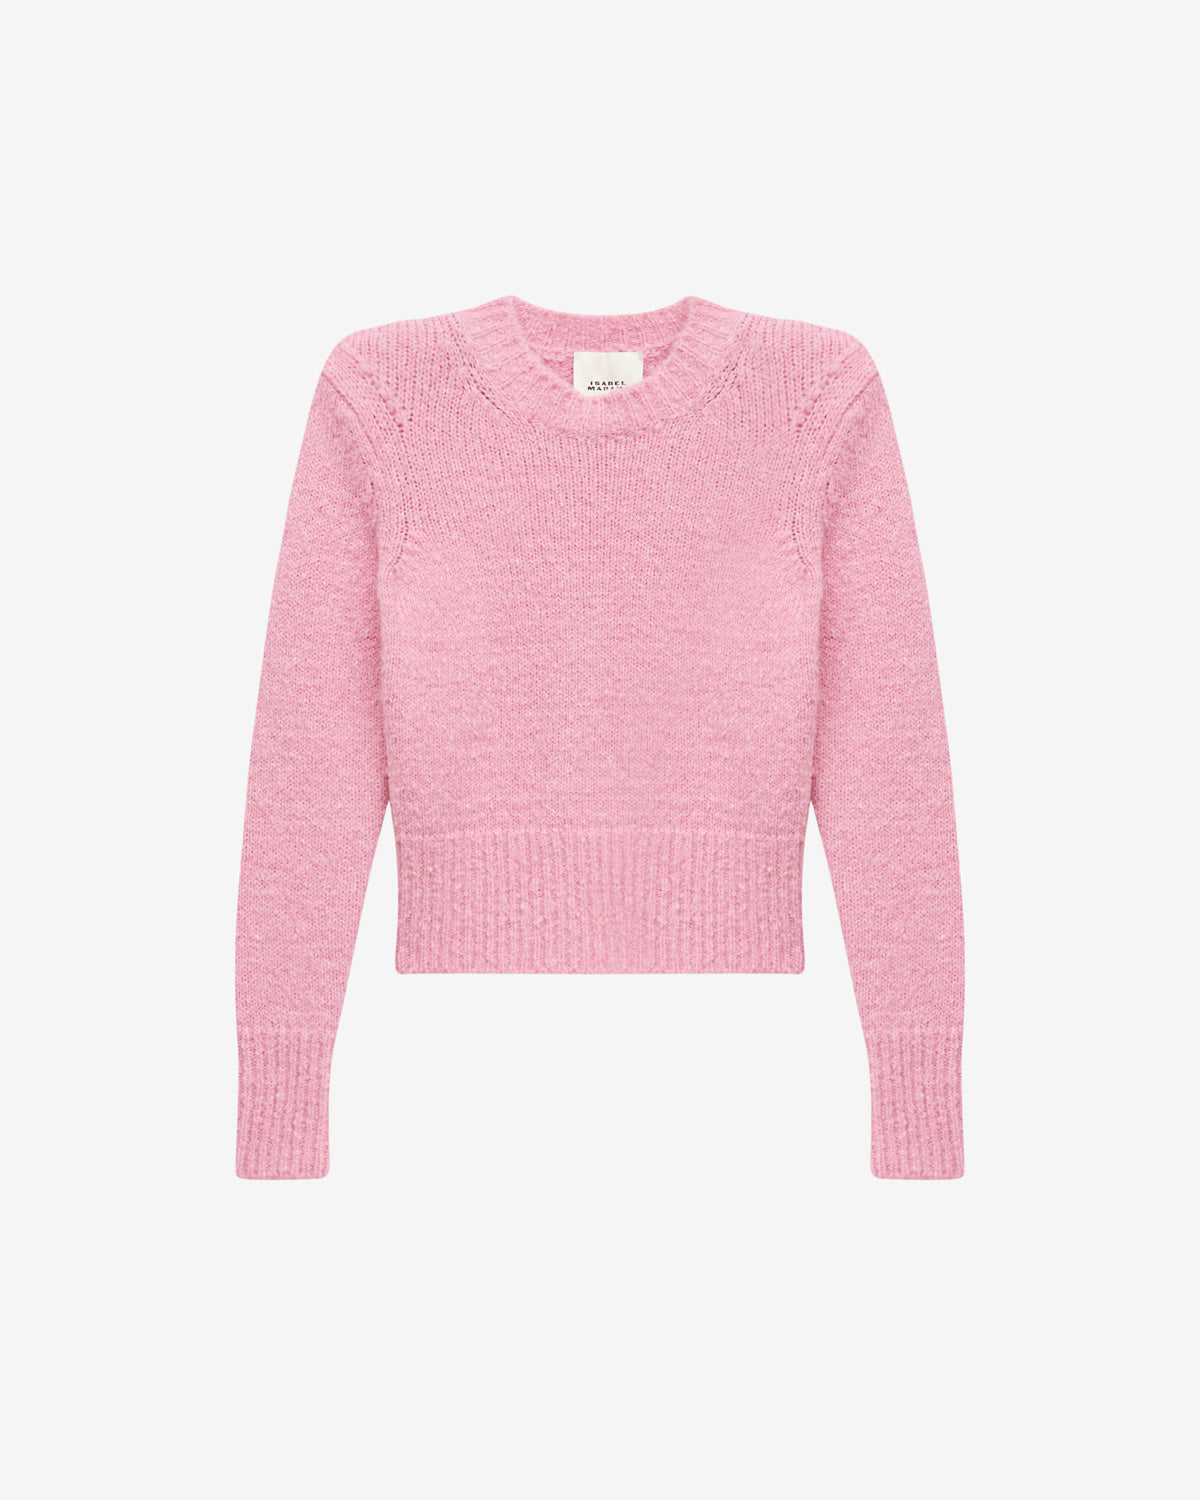 칼로(kalo) 스웨터 Woman Light pink 1